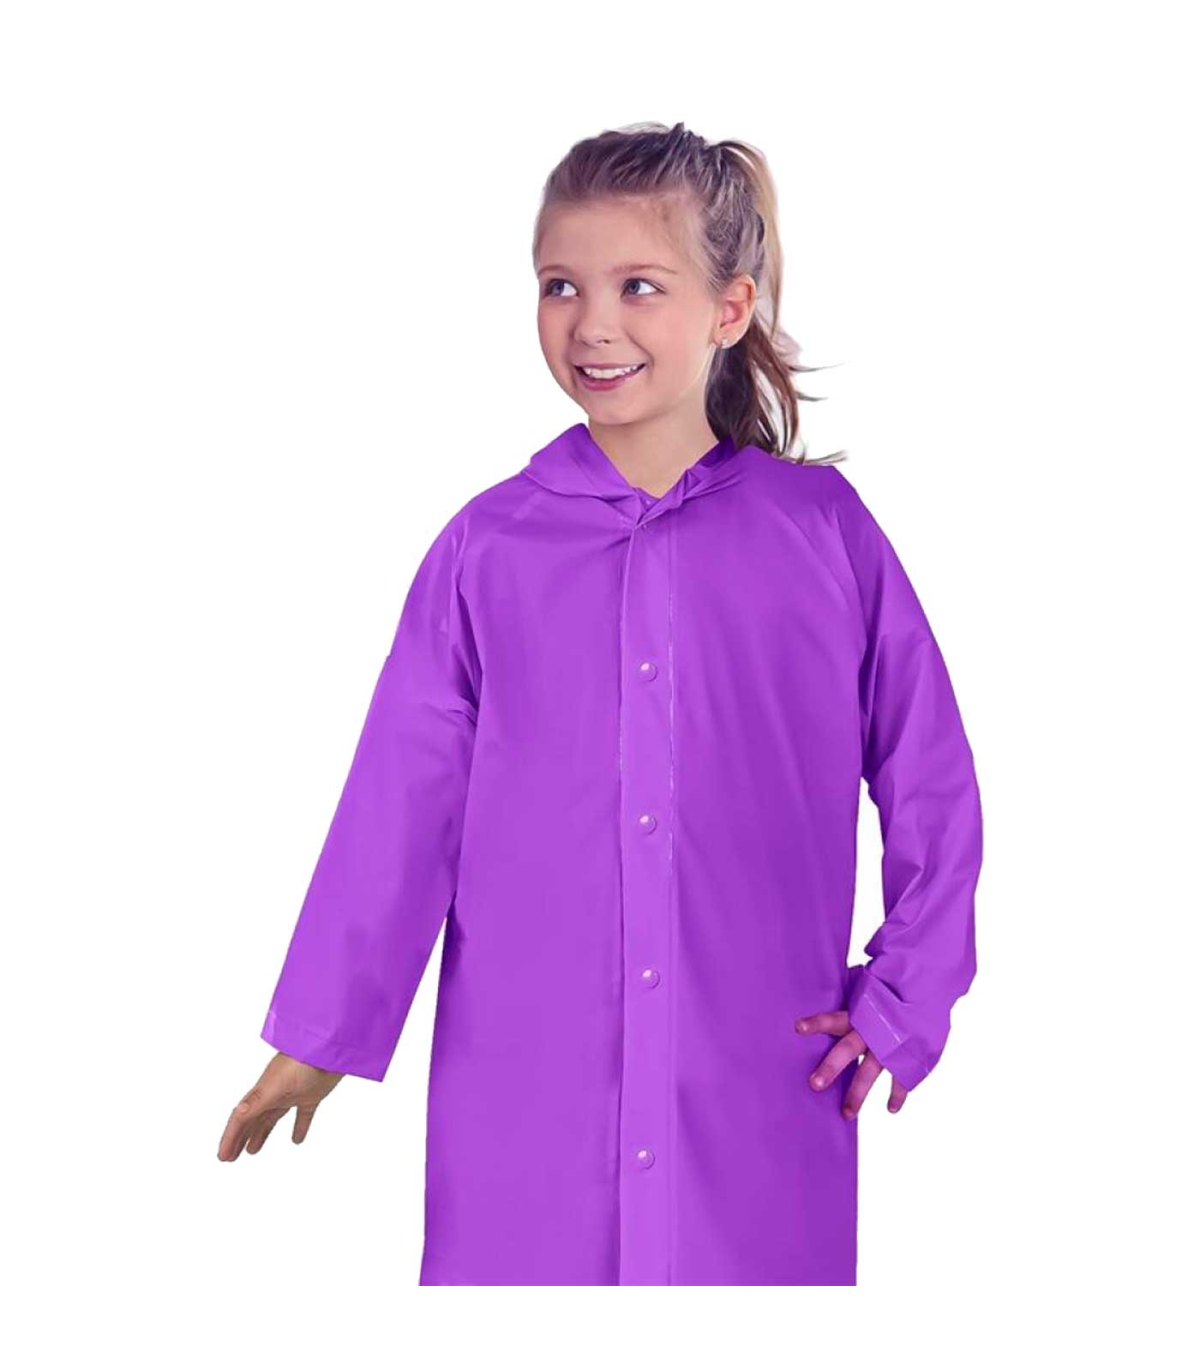 Tradineur - Chubasquero con capucha para niñas - Fabricado 100% poliéster -  Costura termoselladas - Talla para niños de 8 a 10 a